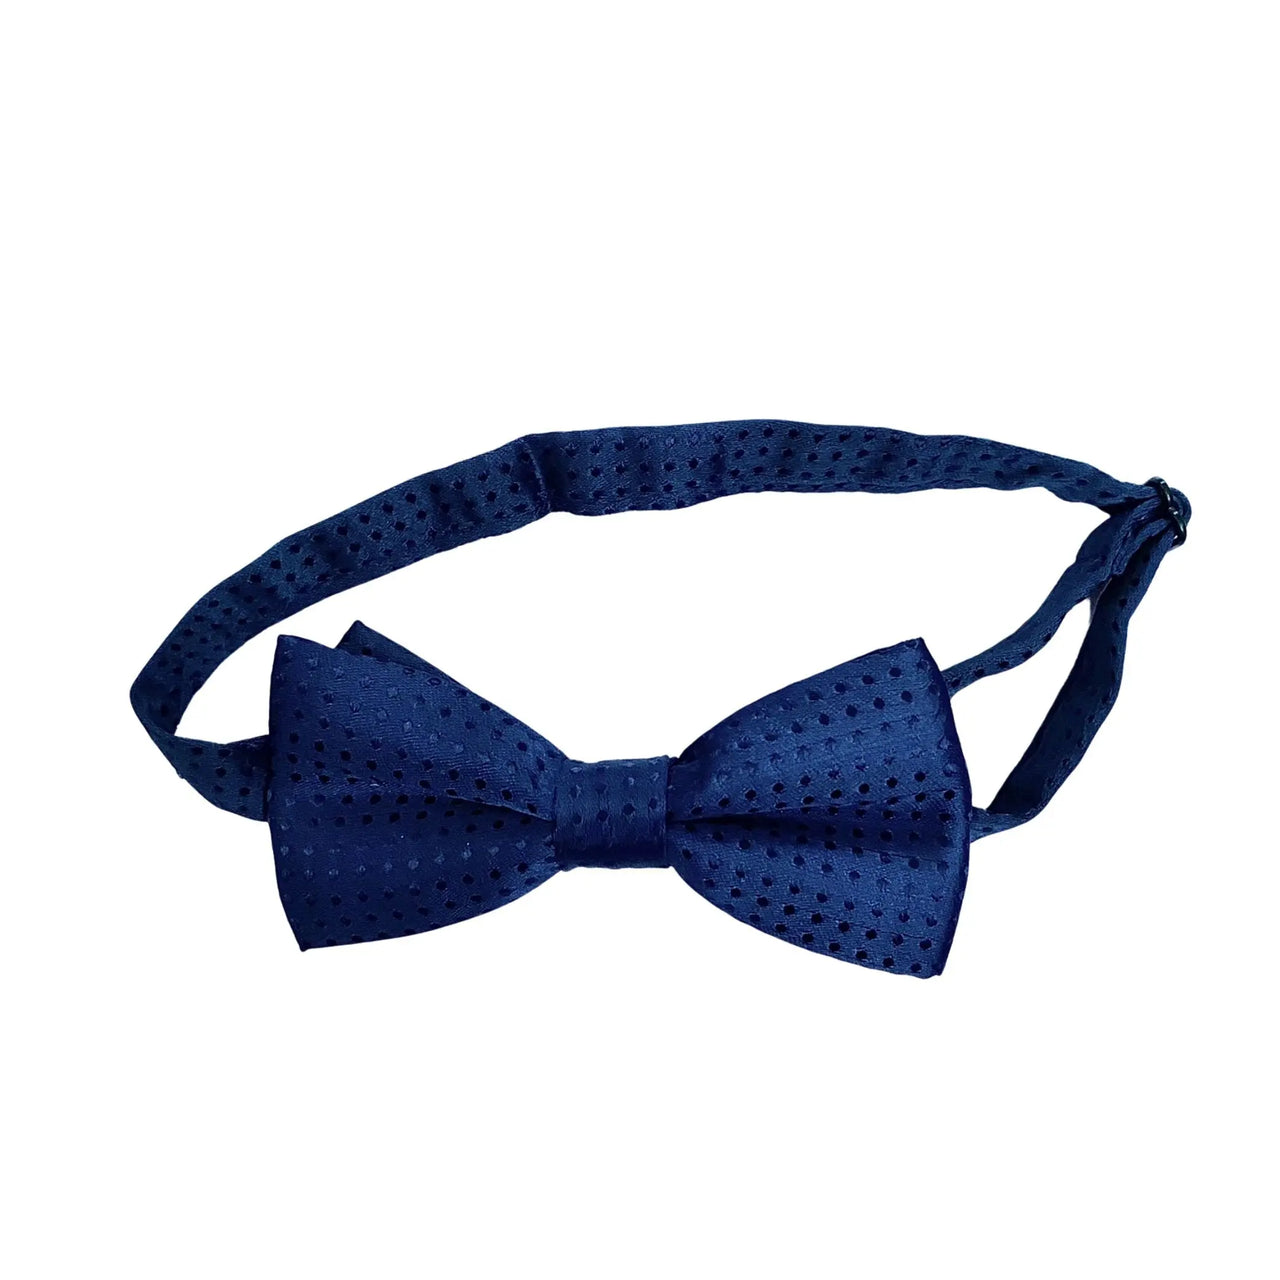 Corbata Moño Polka Dot Azul Marino % elbauldecleo %